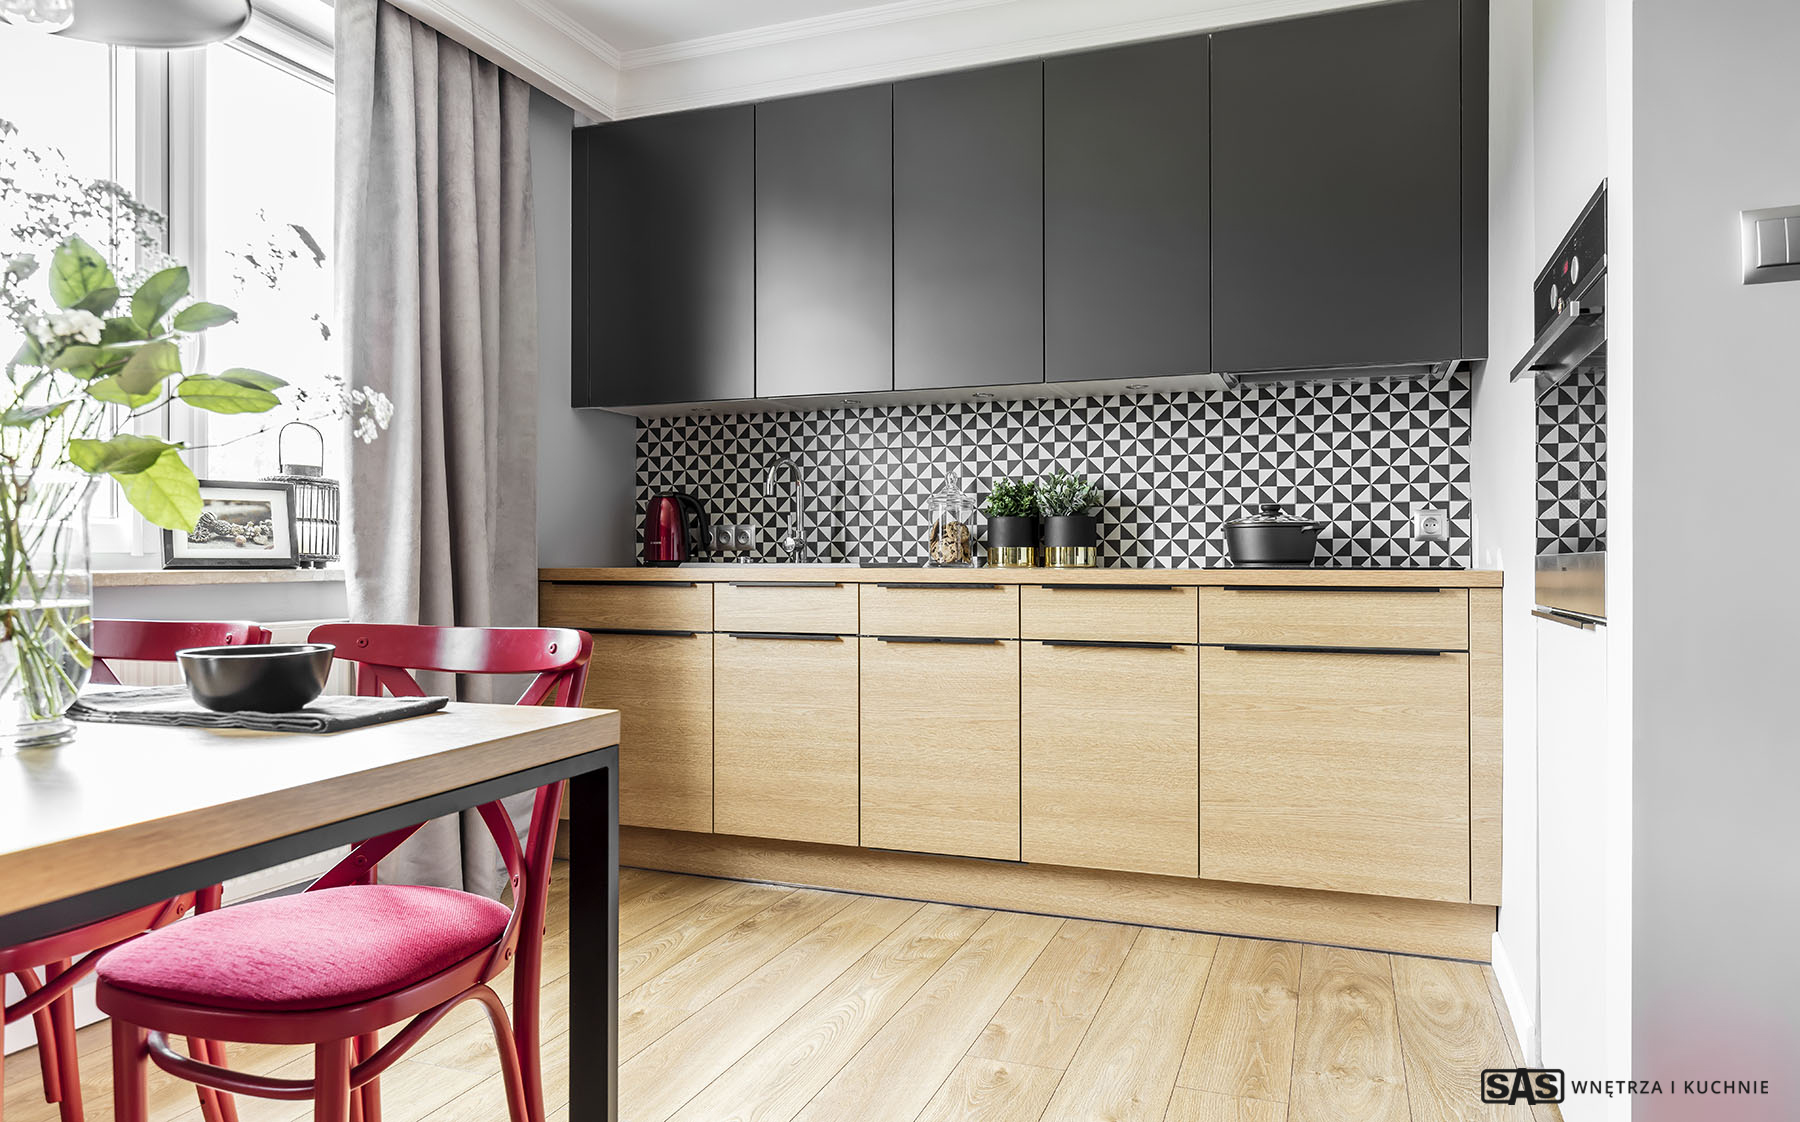 Meble kuchenne na wymiar wykonanie SAS Wnętrze i Kuchnie - projekt architekt wnętrz Emilia Strzempek Plasun.